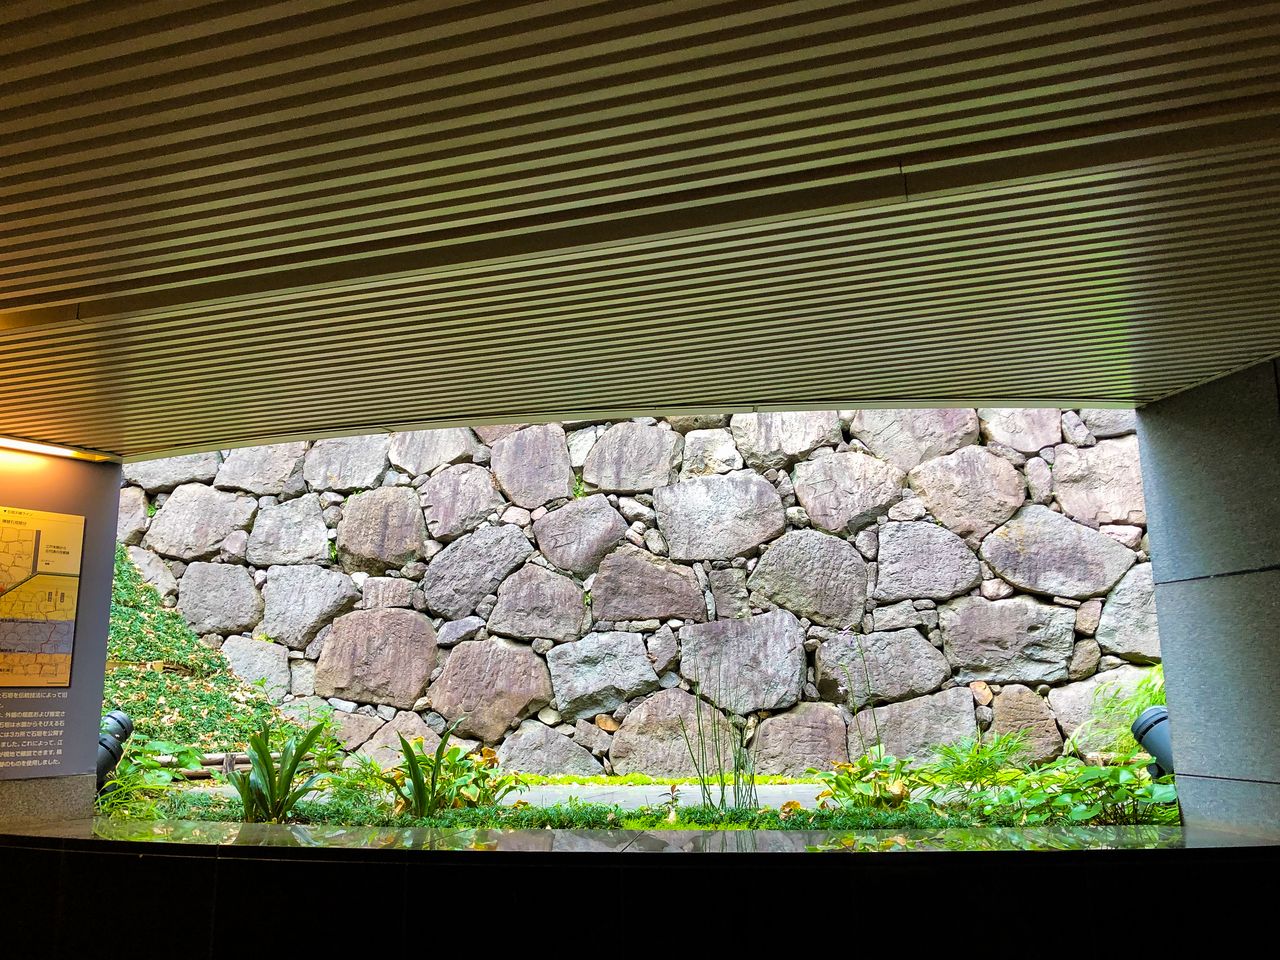 Restos del muro de piedra del foso exterior del castillo de Edo, en las instalaciones del Ministerio de Educación, Cultura, Deporte, Ciencia y Tecnología. (imagen: PIXTA)